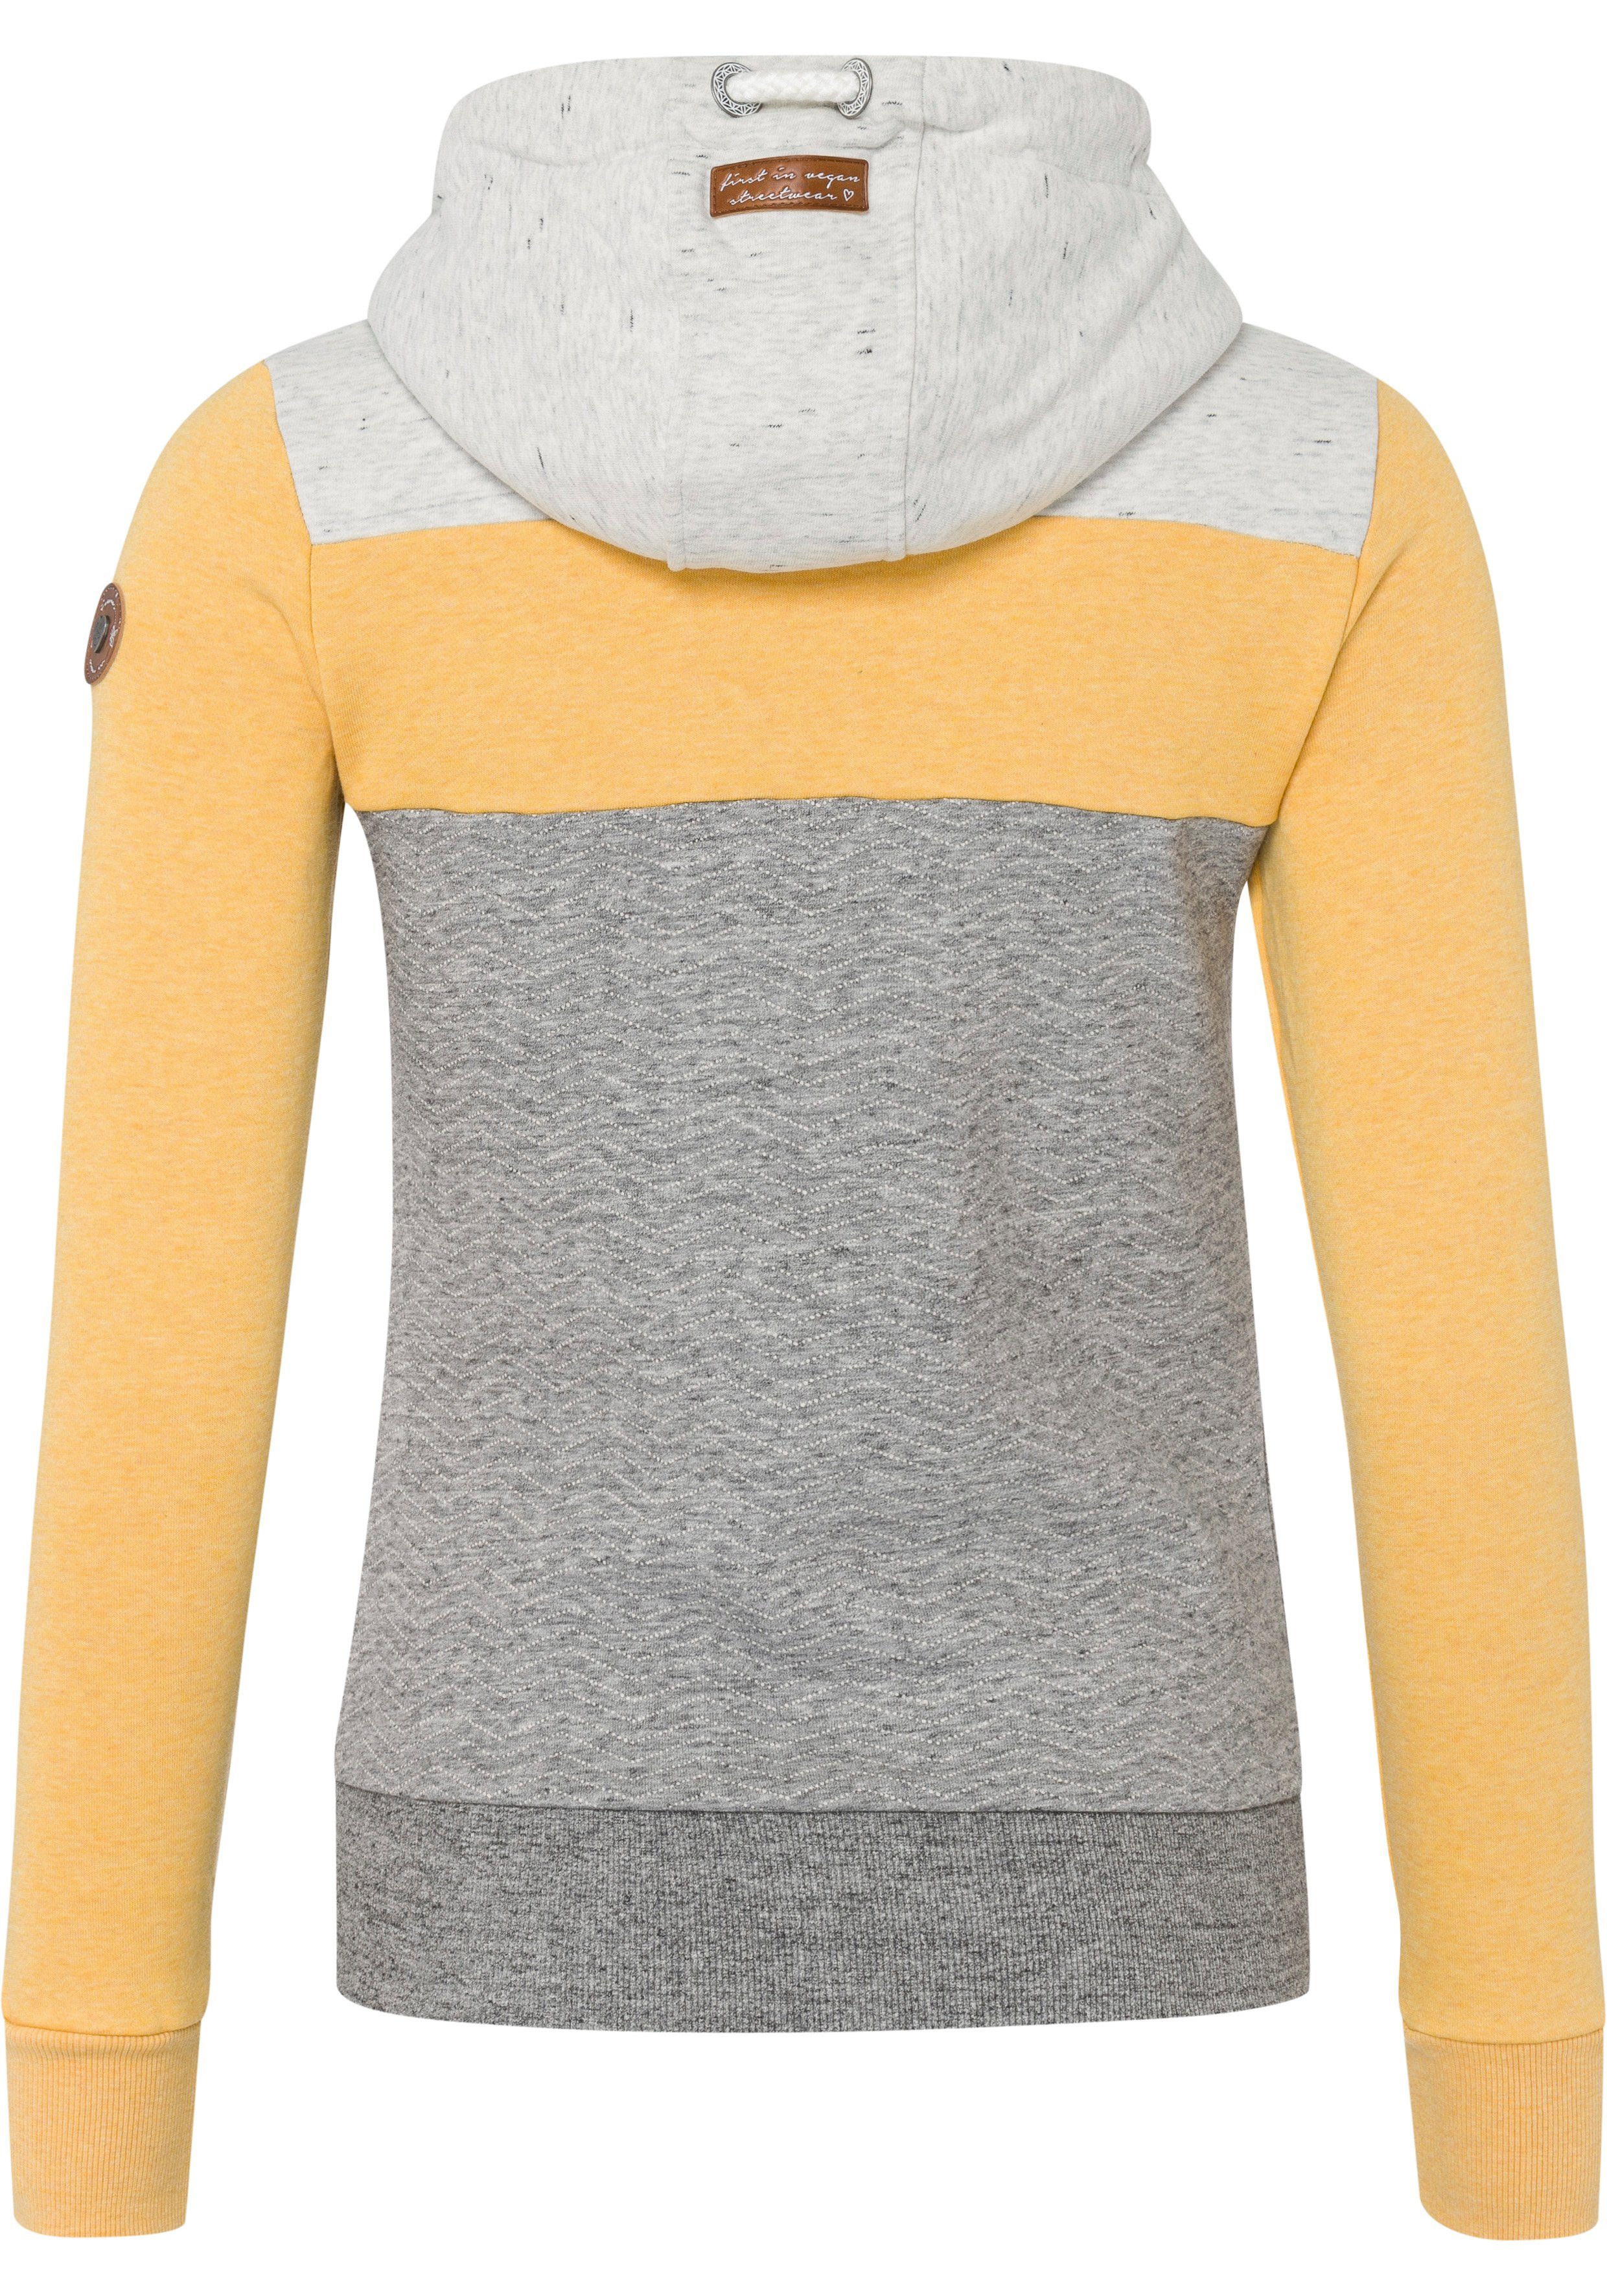 ZIP TREGA im O Colorblocking-Design yellow Sweatjacke Ragwear